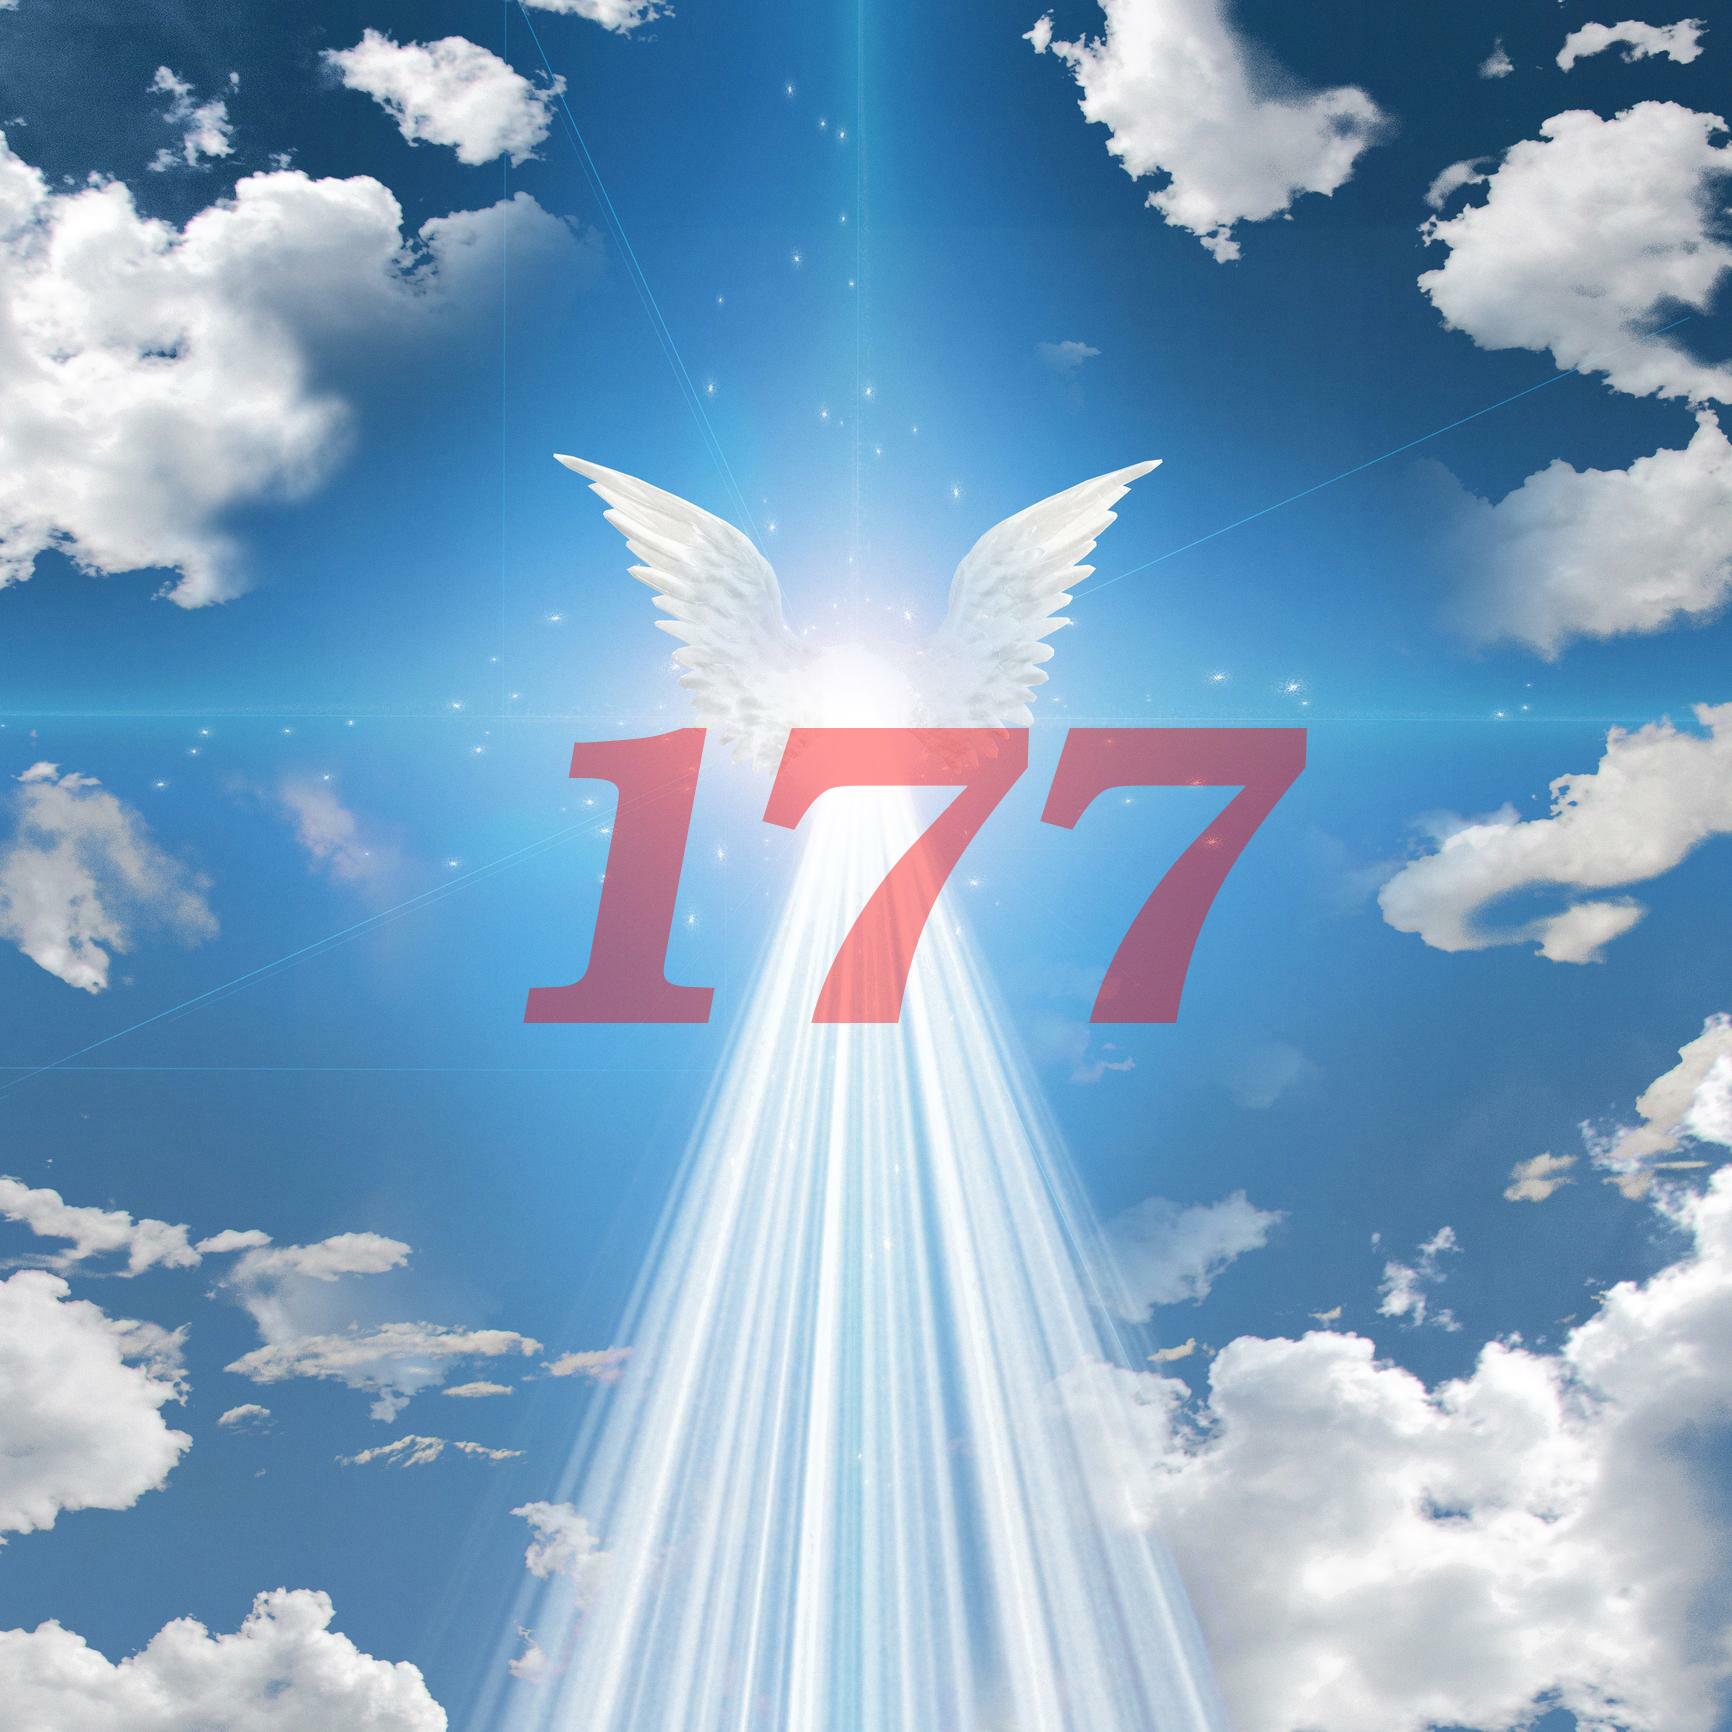 177 angel number